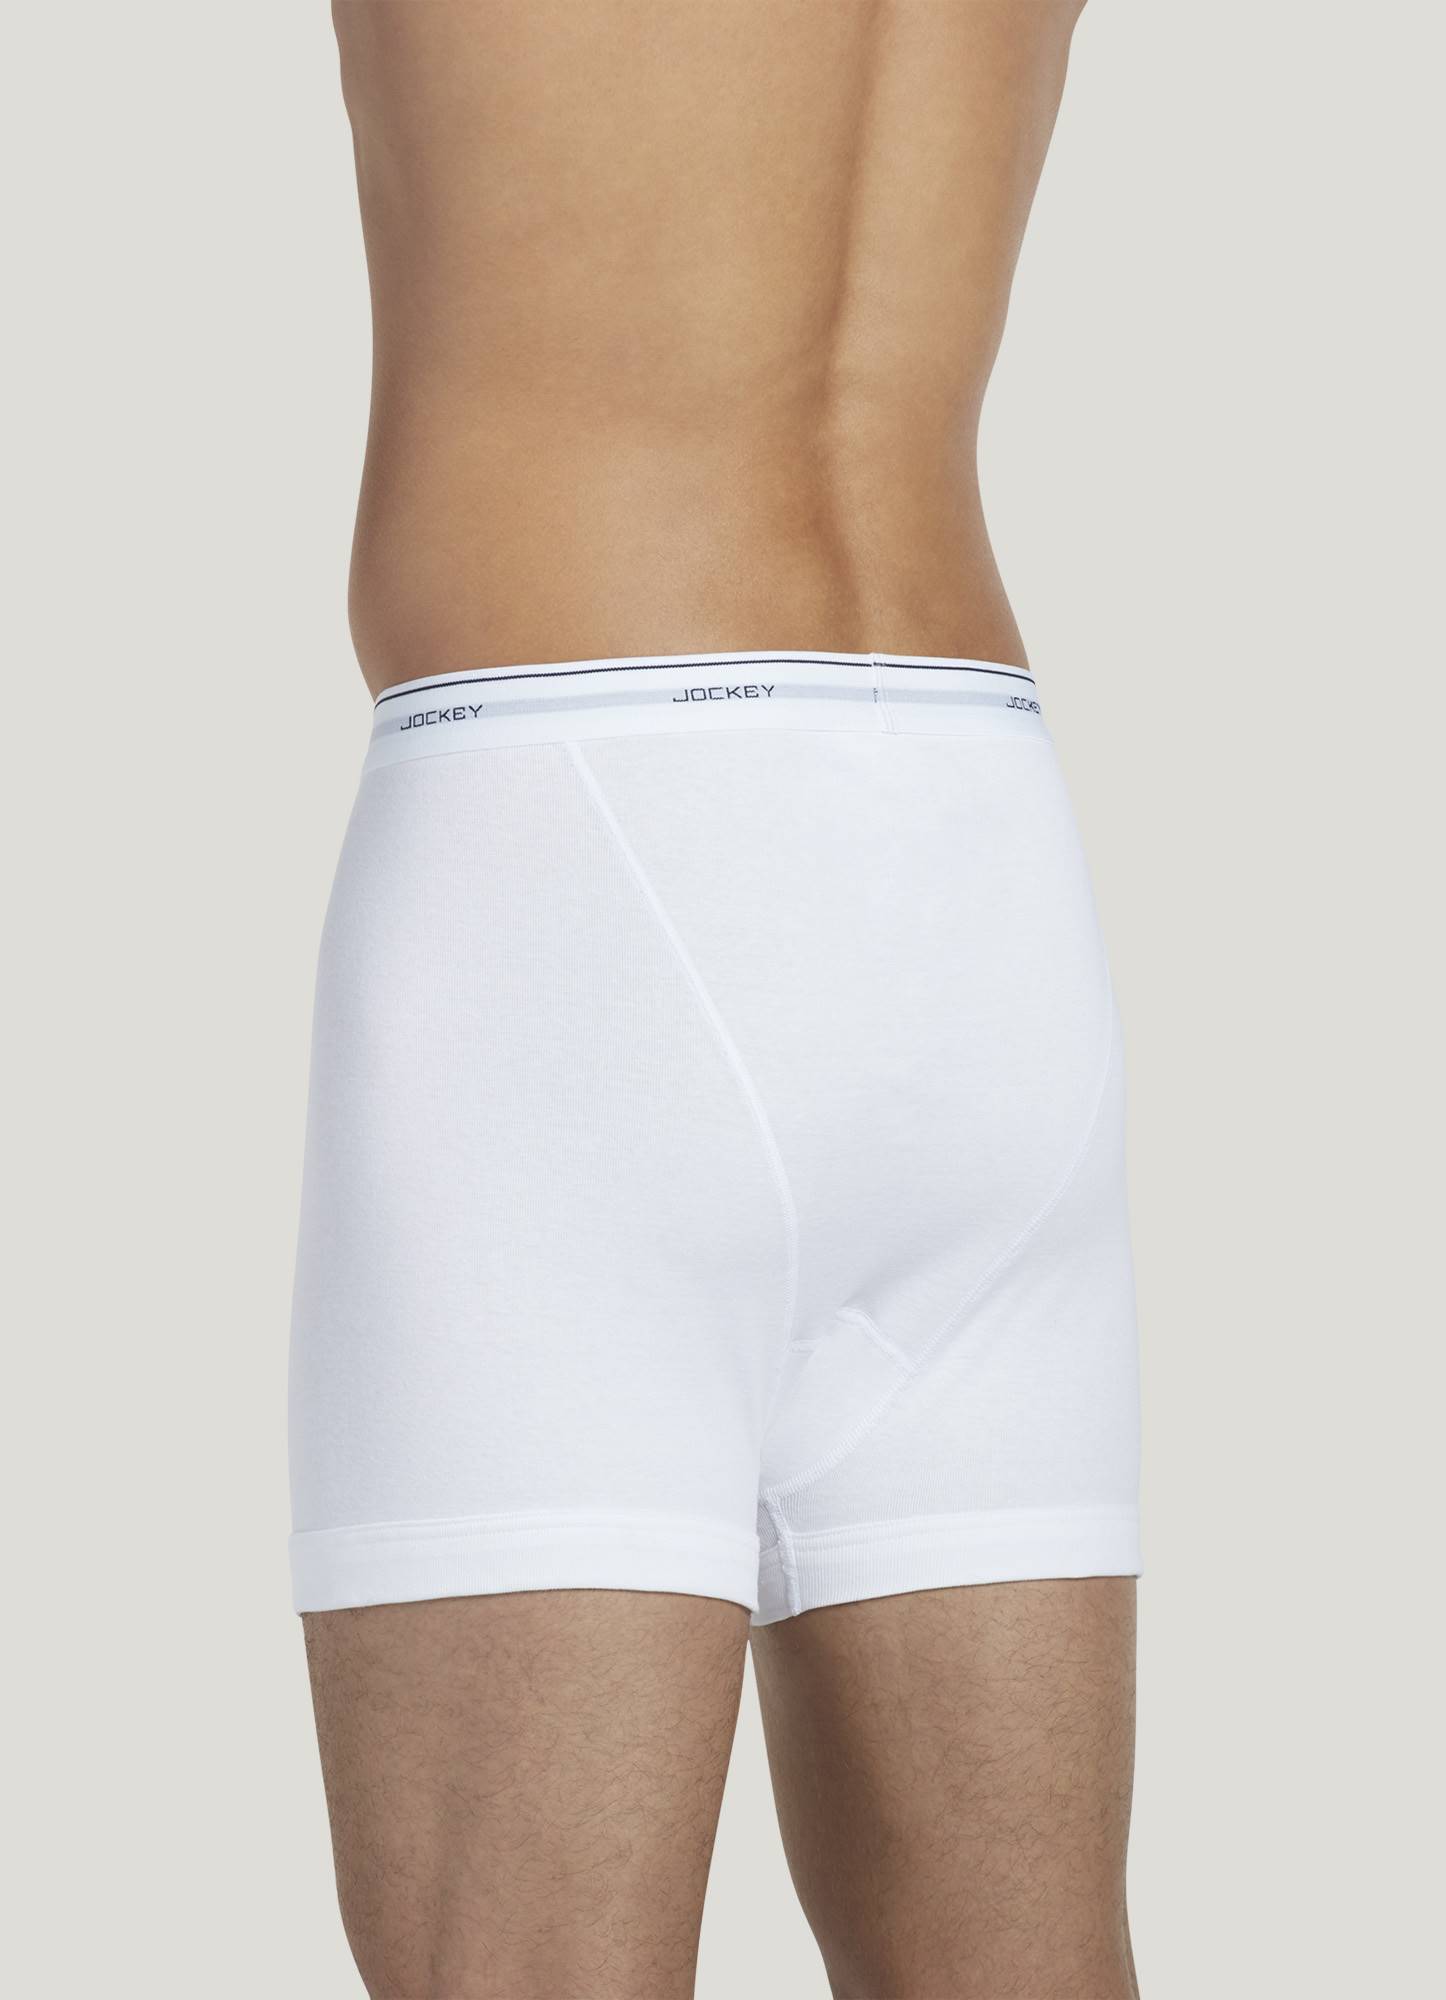 Jockey Mens Classic Brief 3 Pack Underwear Briefs 100% cotton